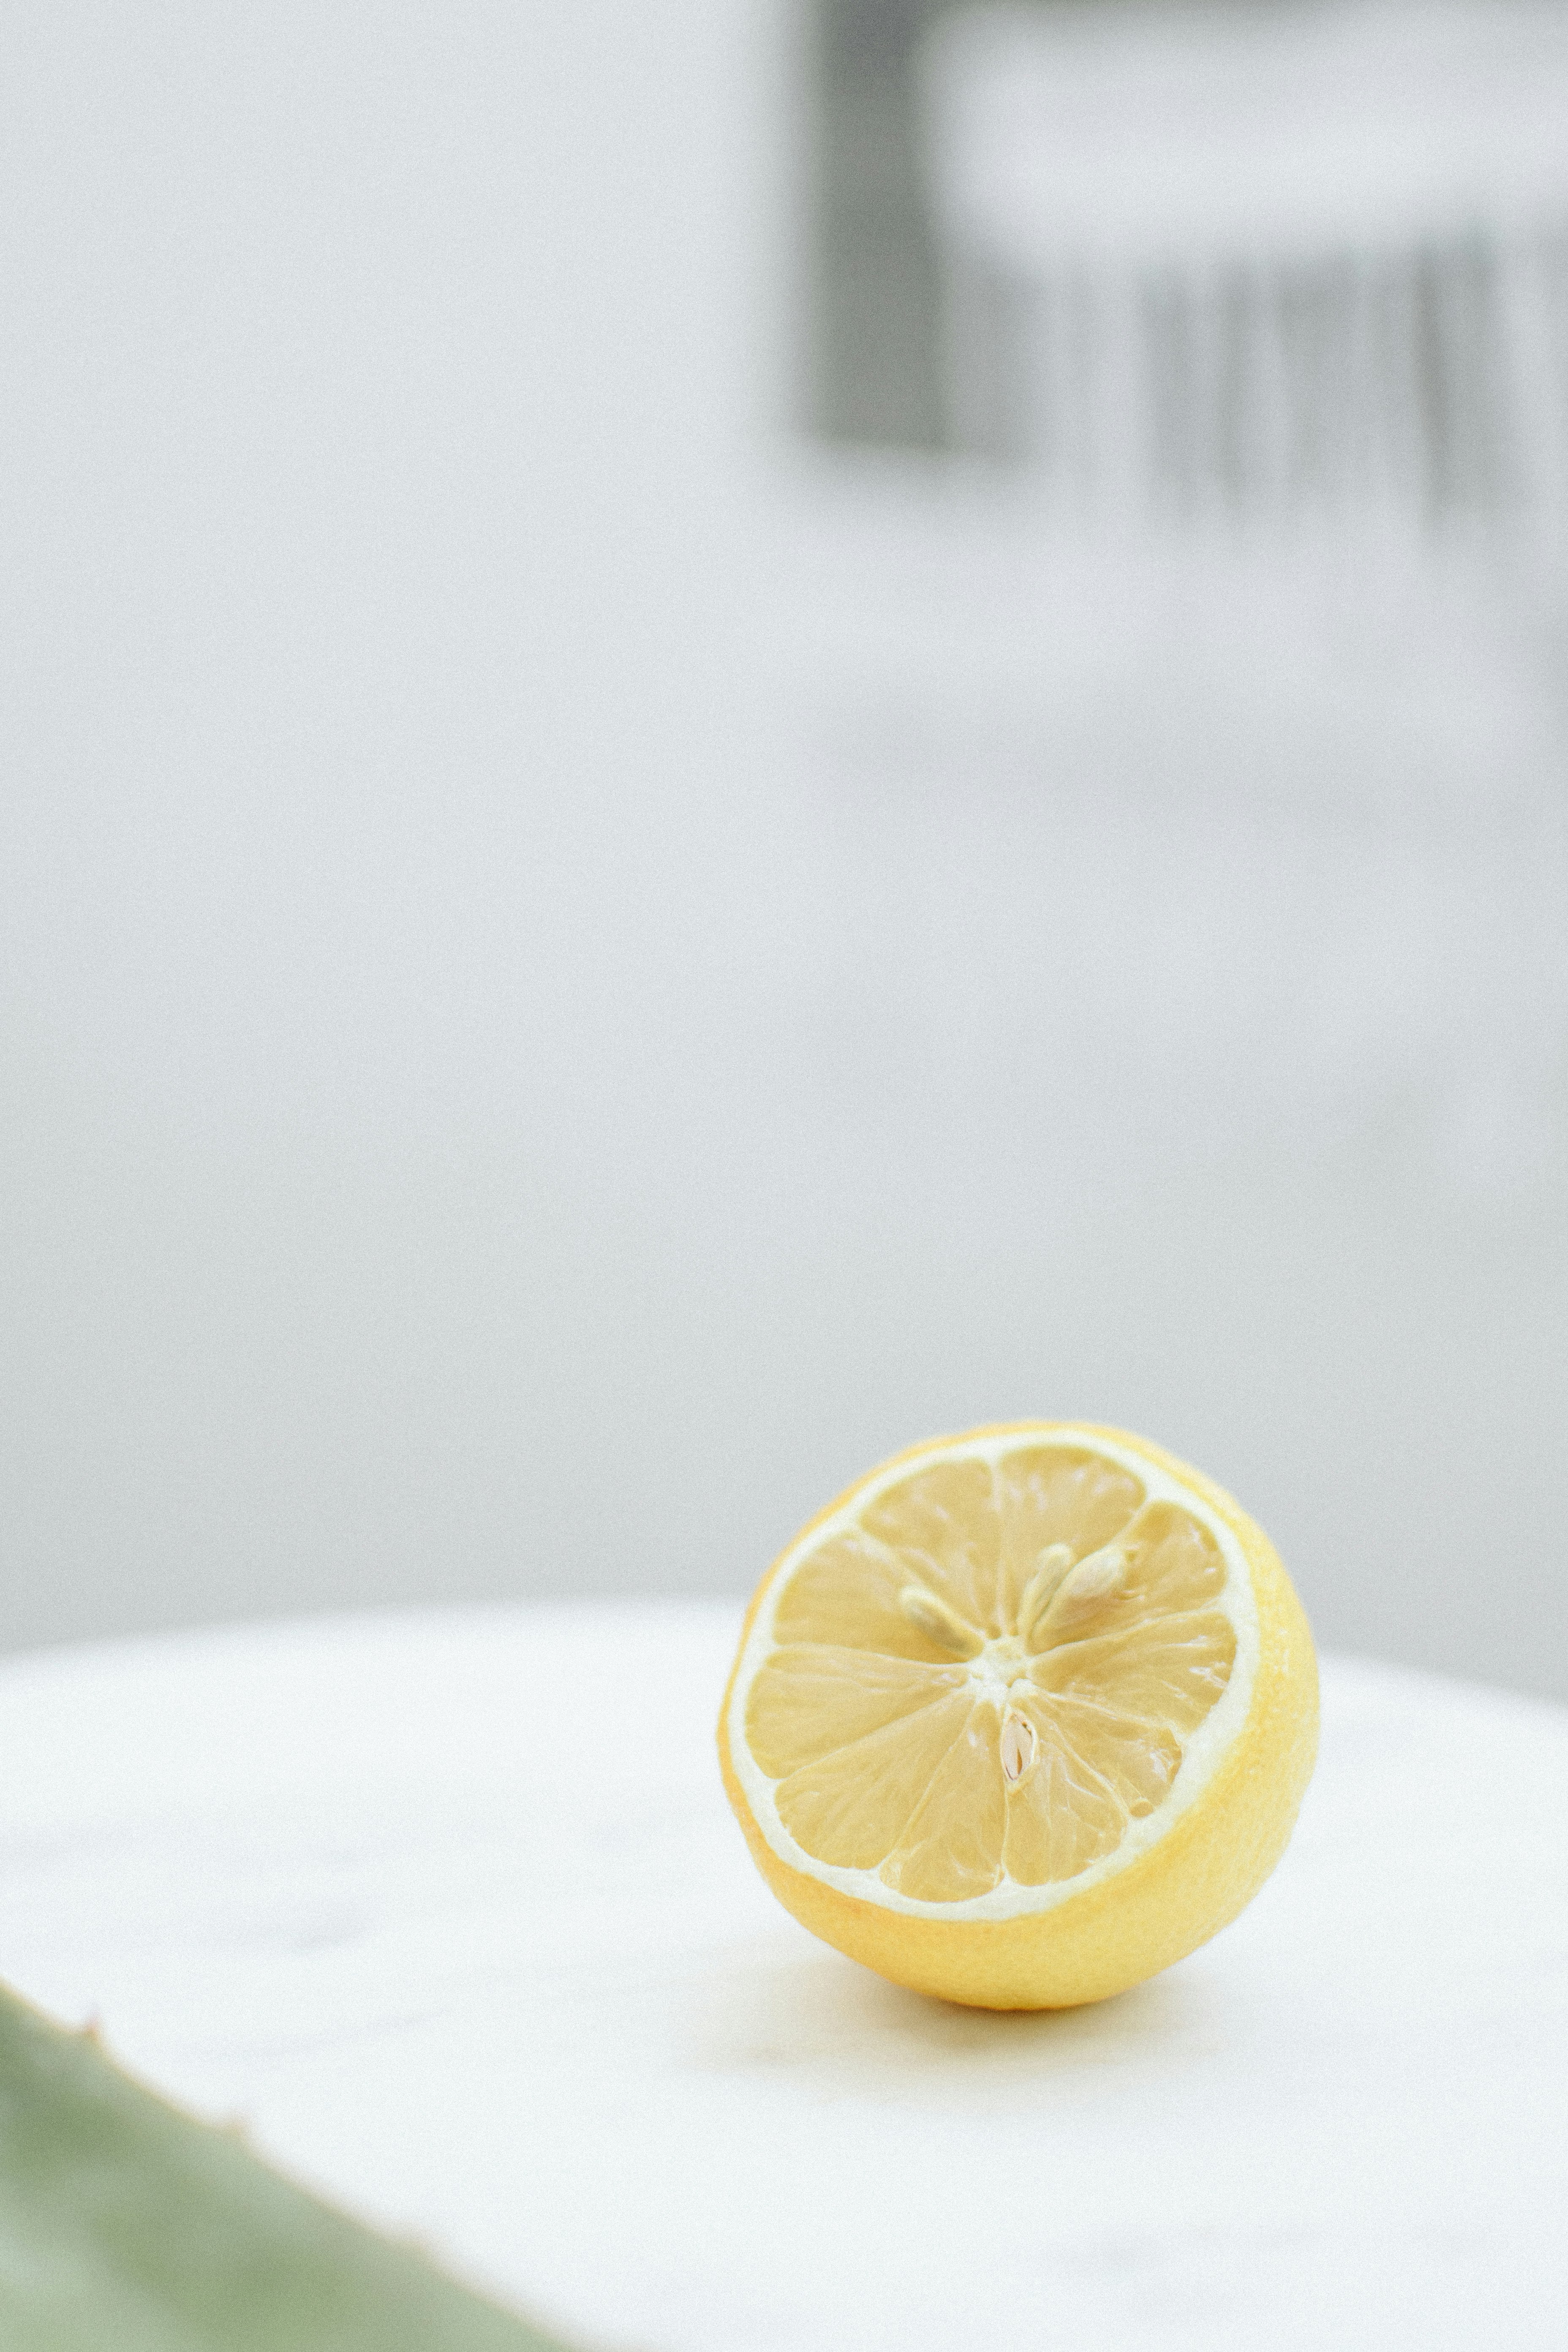 yellow lemon on white table